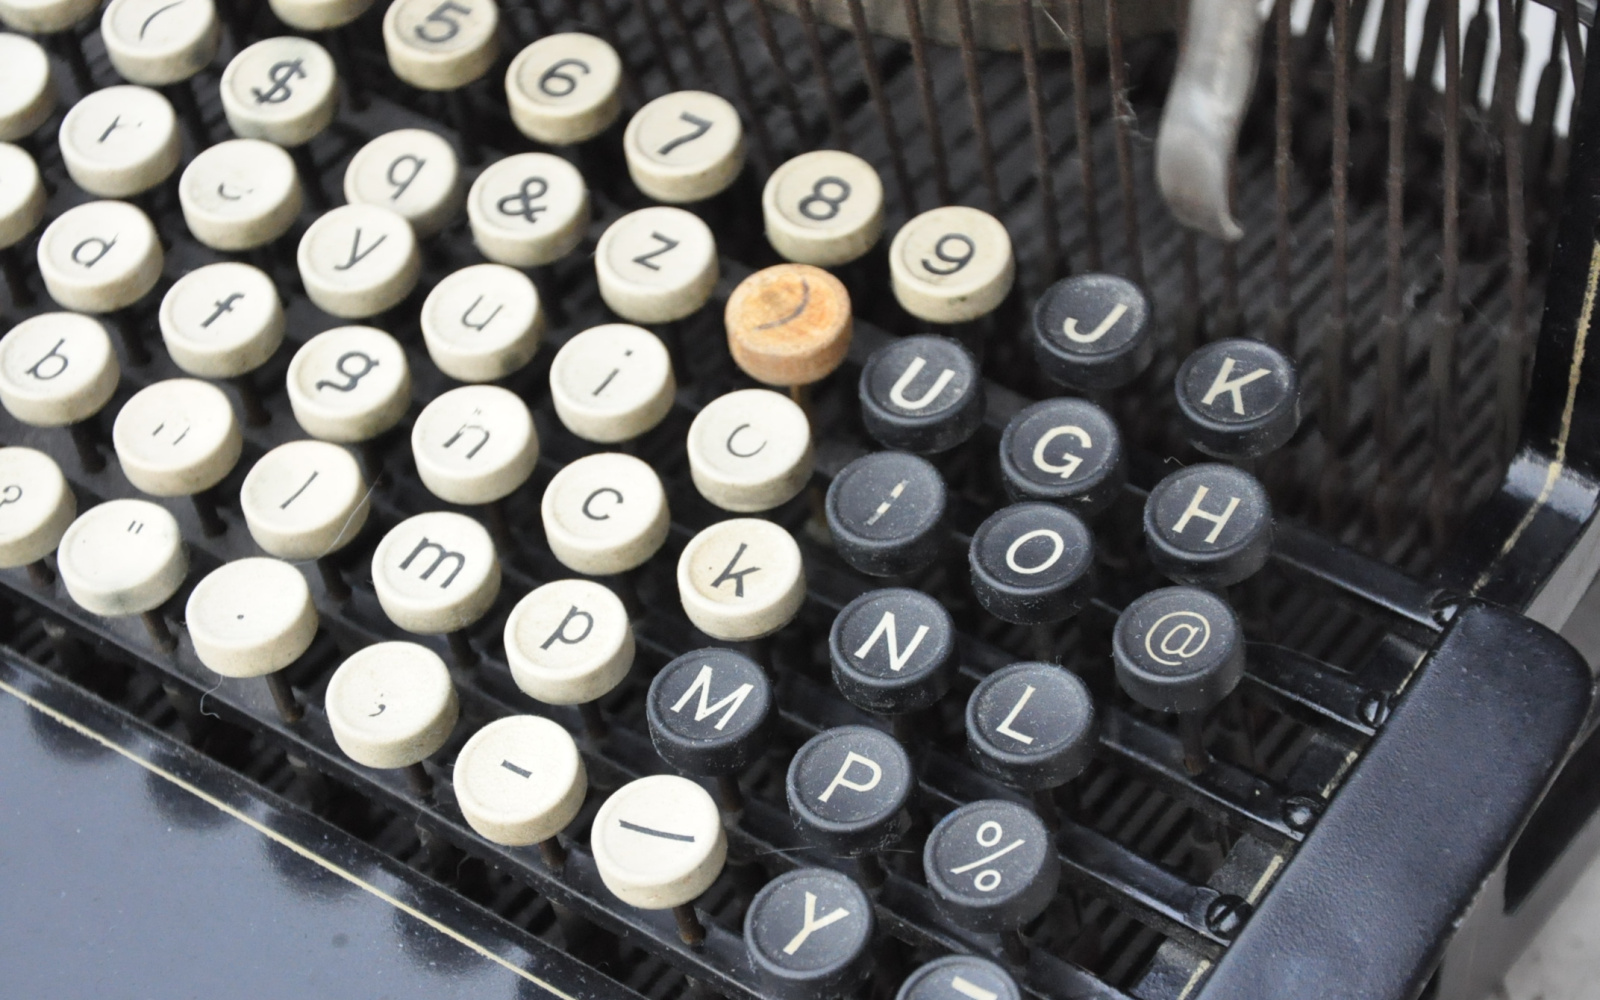 Historische Schreibmaschine Caligraph 2 mit @-Zeichen